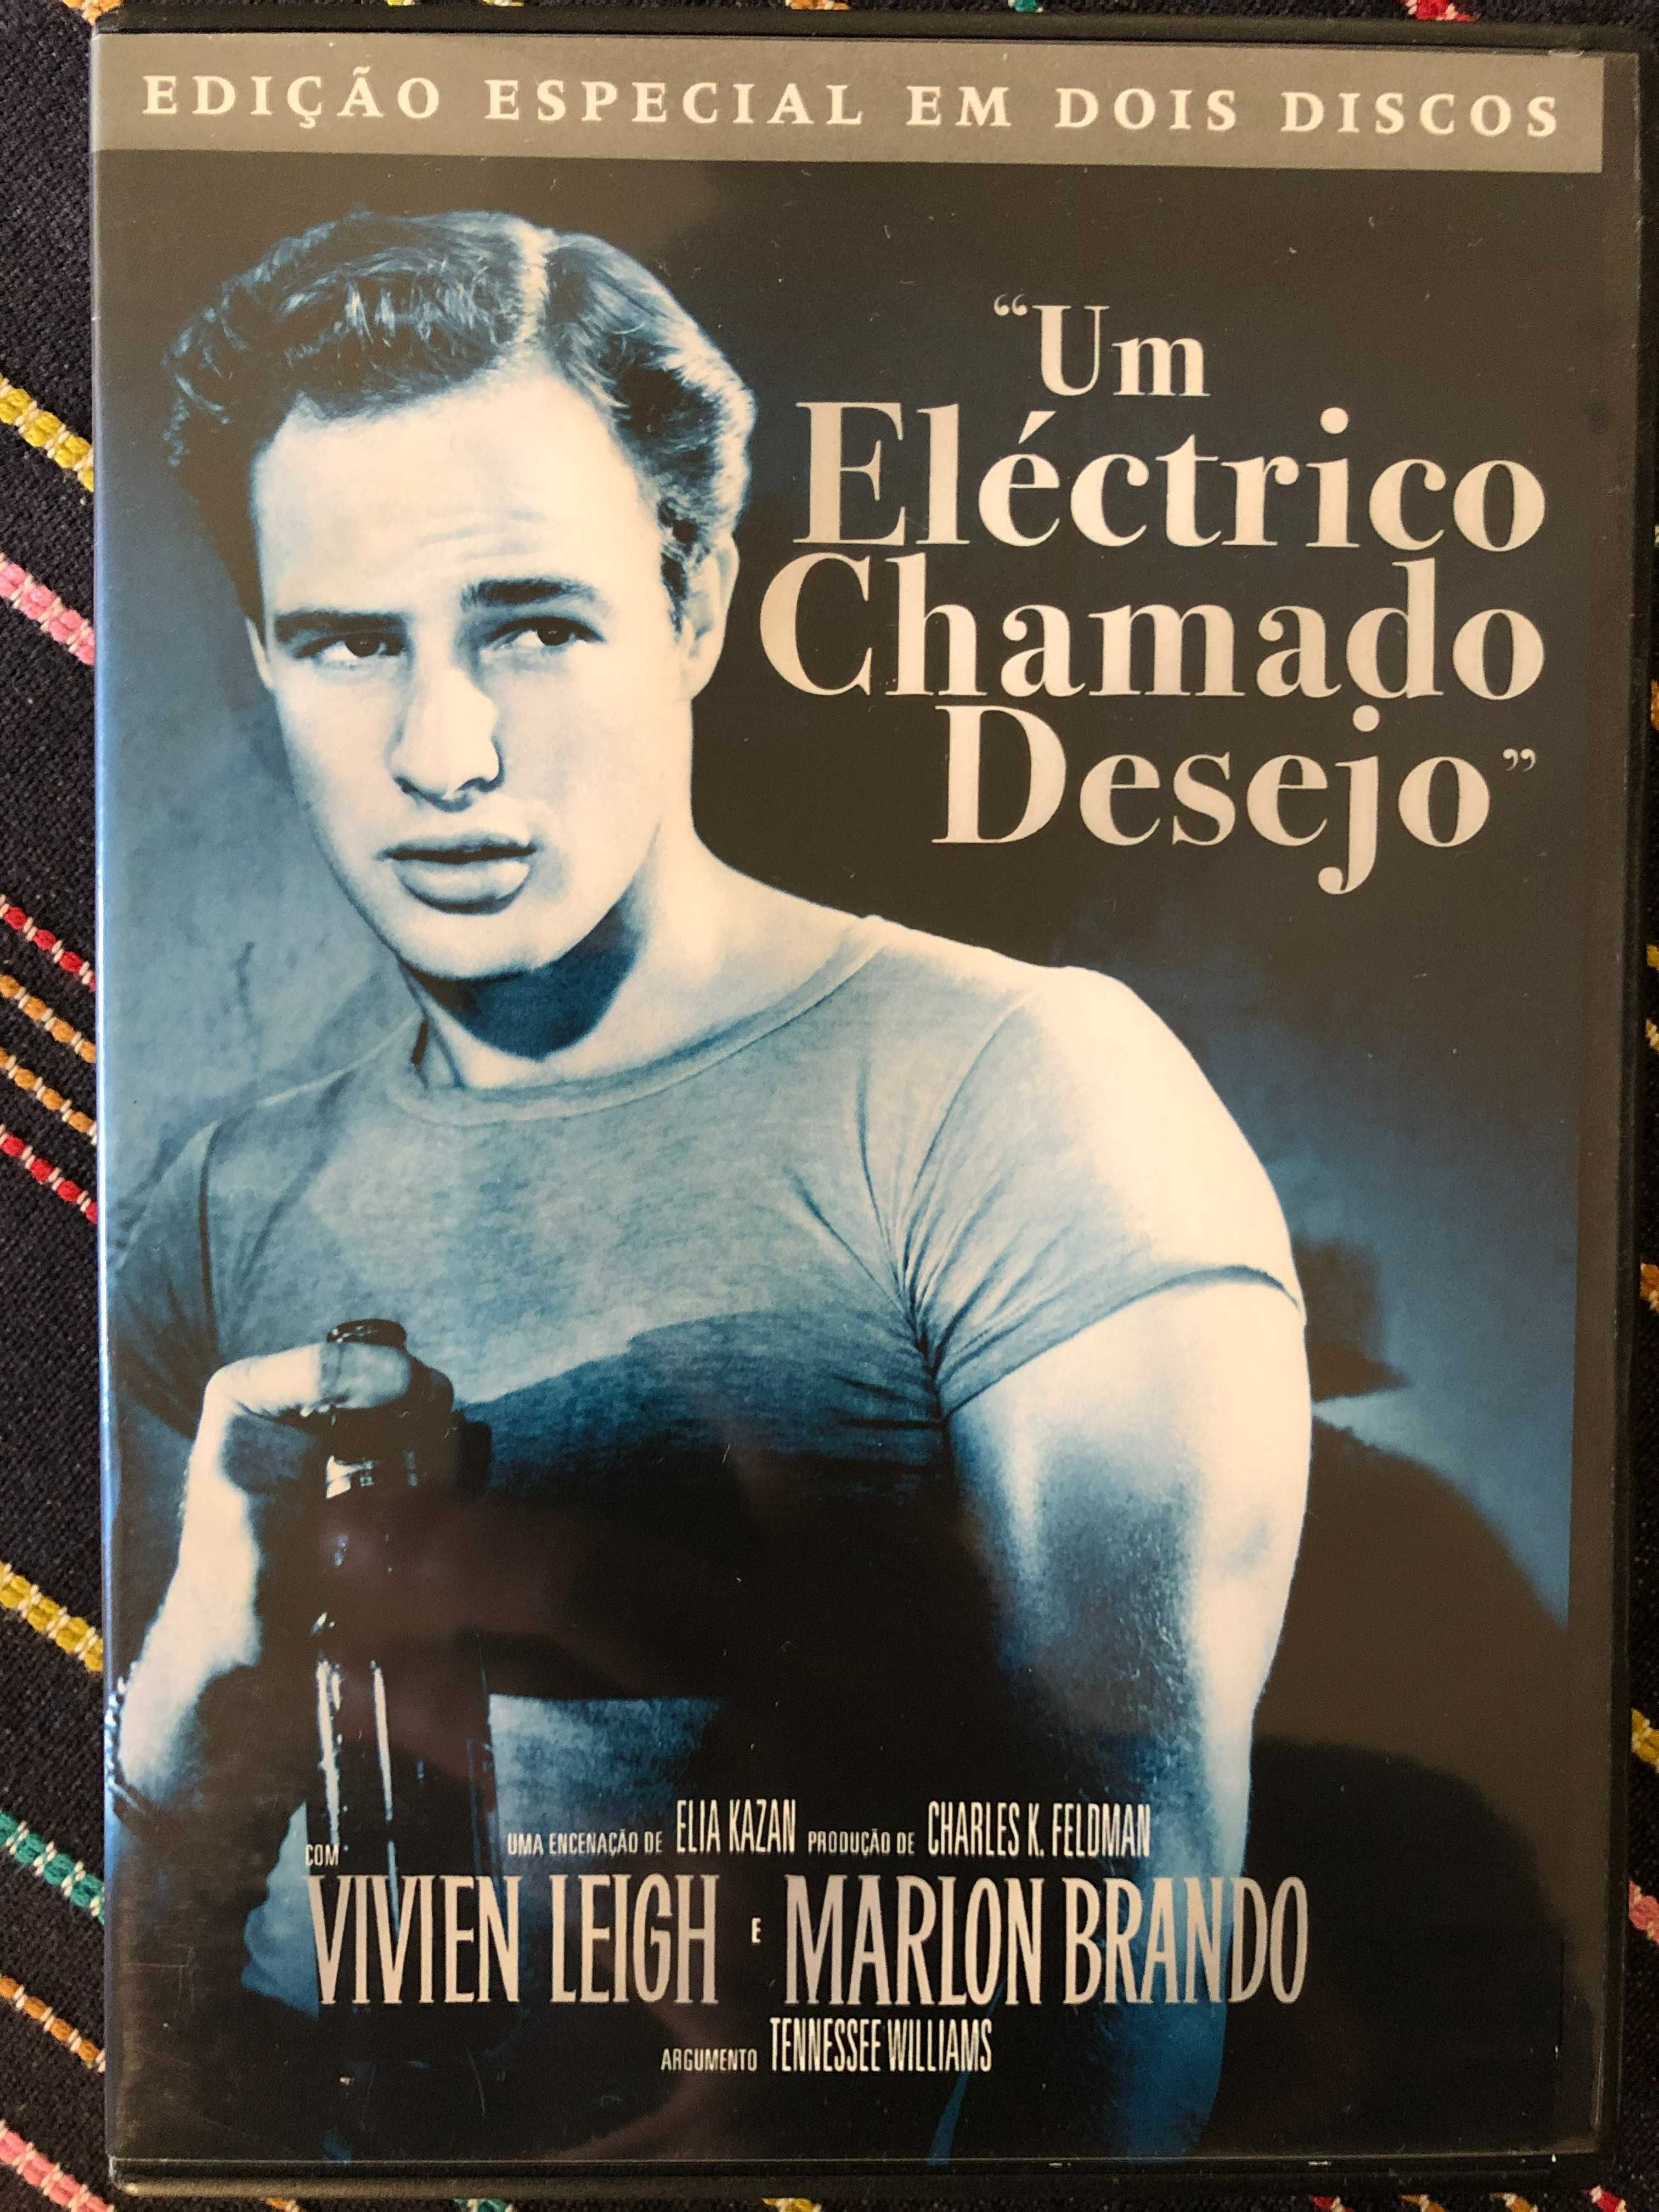 Um eléctrico chamado desejo com Marlon Brando - 2 discos